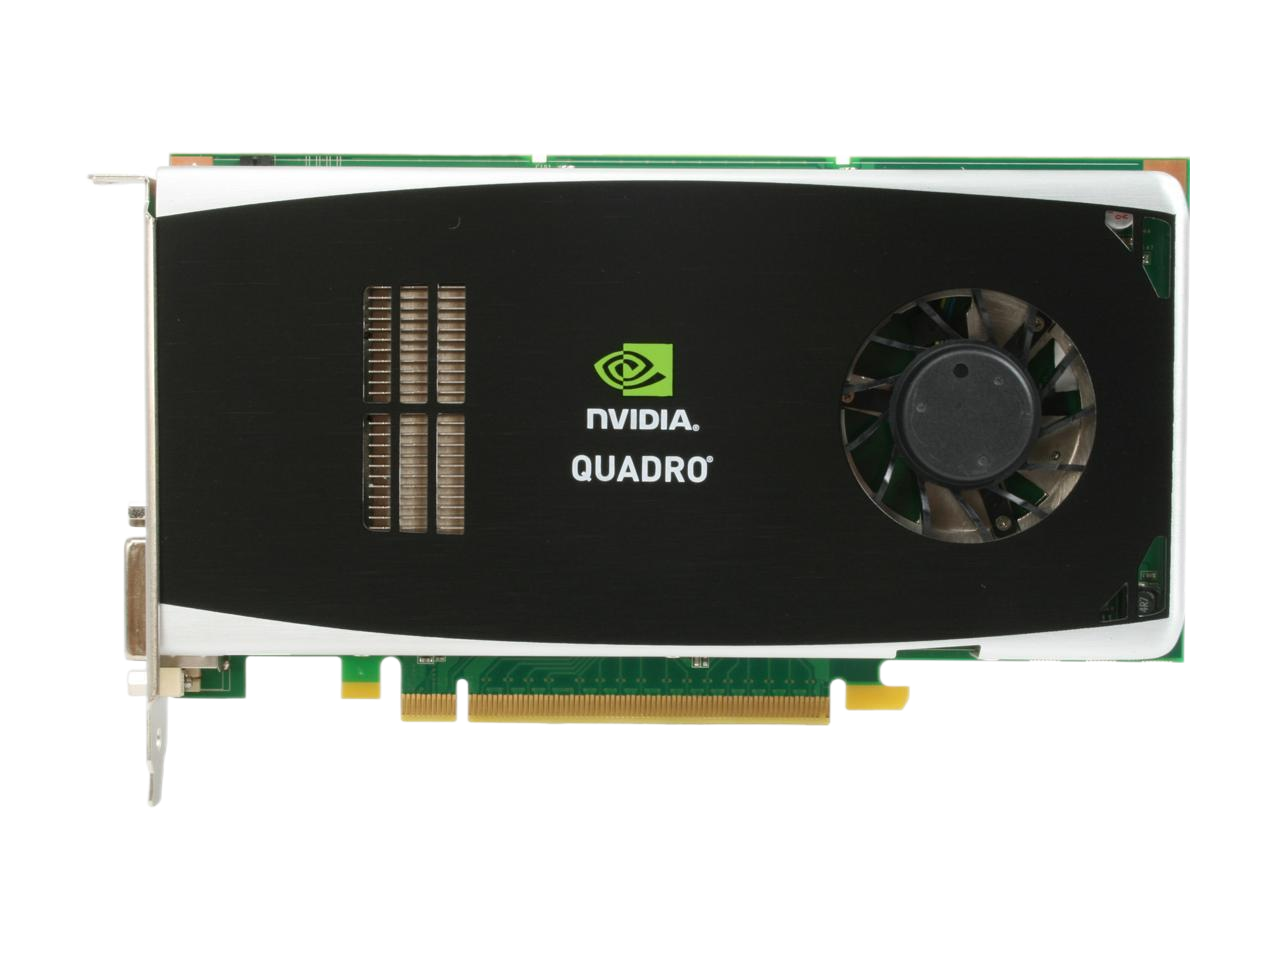 PNY NVIDIA Quadro FX 3800 1GB GDDR3 PCI Express Gen 2 x16 DVI-I DL Professional Graphics Board VCQFX3800-PCIE-PB